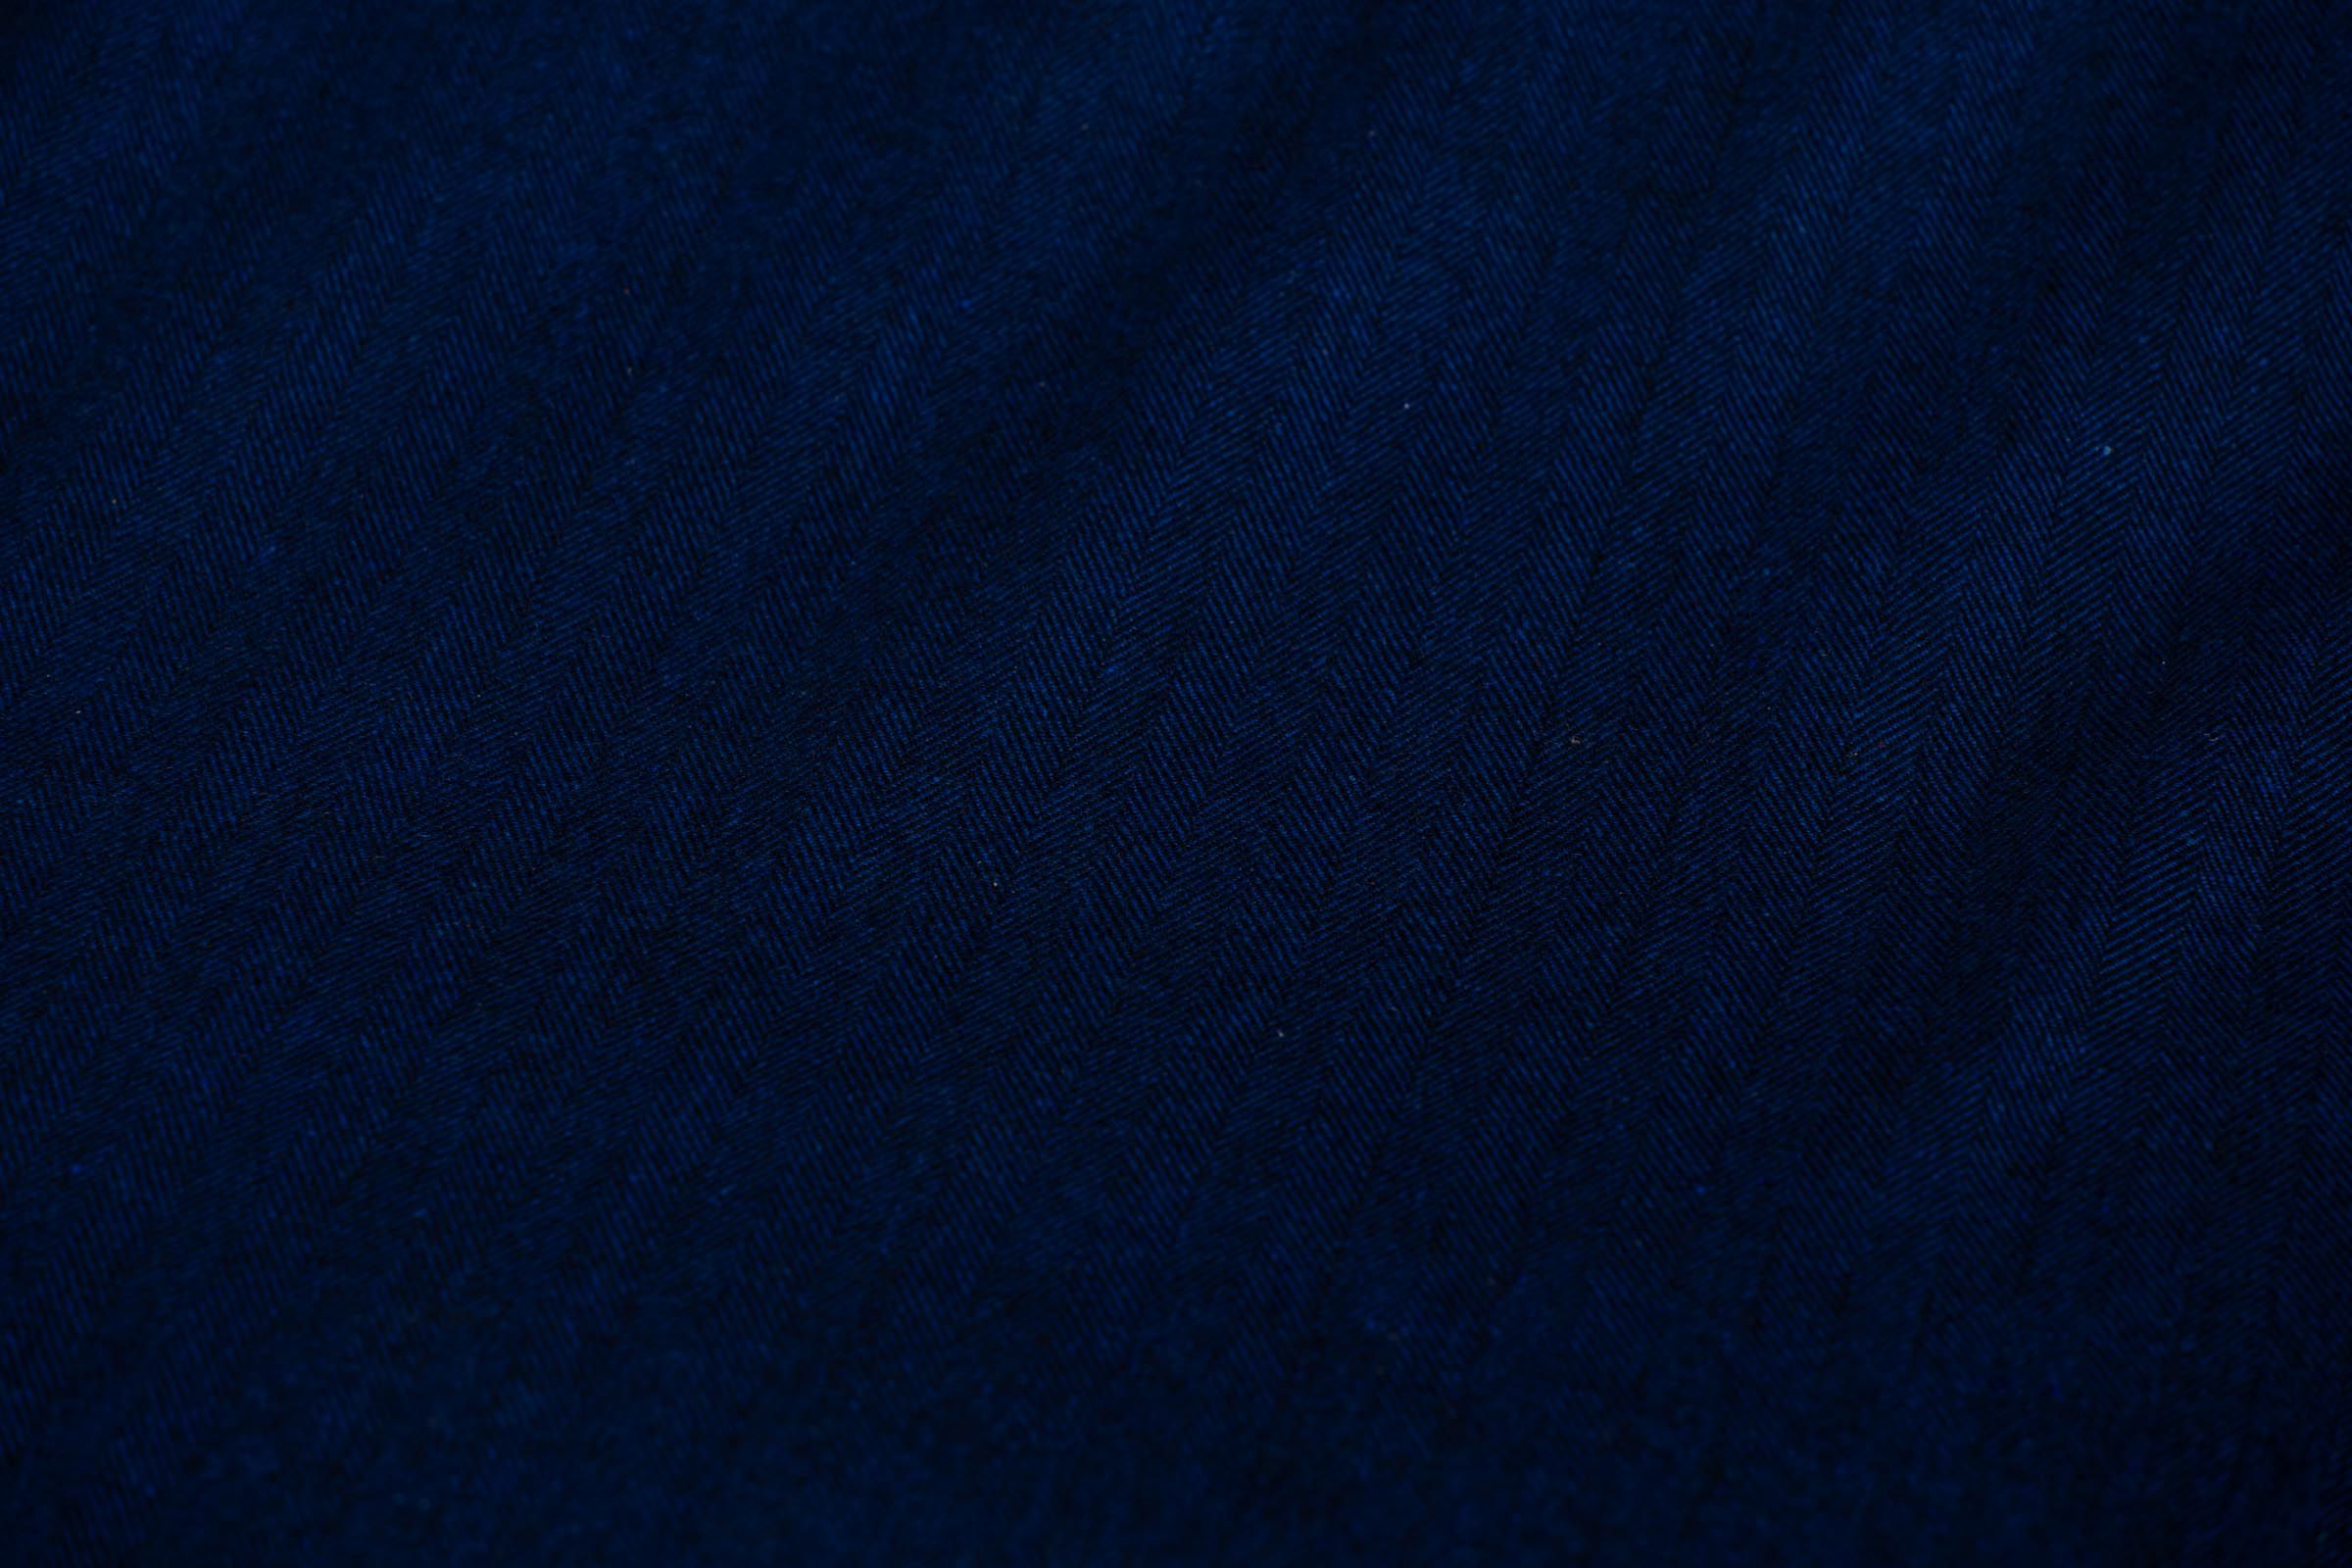 Cobalt Blue Herring Bone Tweed Wool Fabric